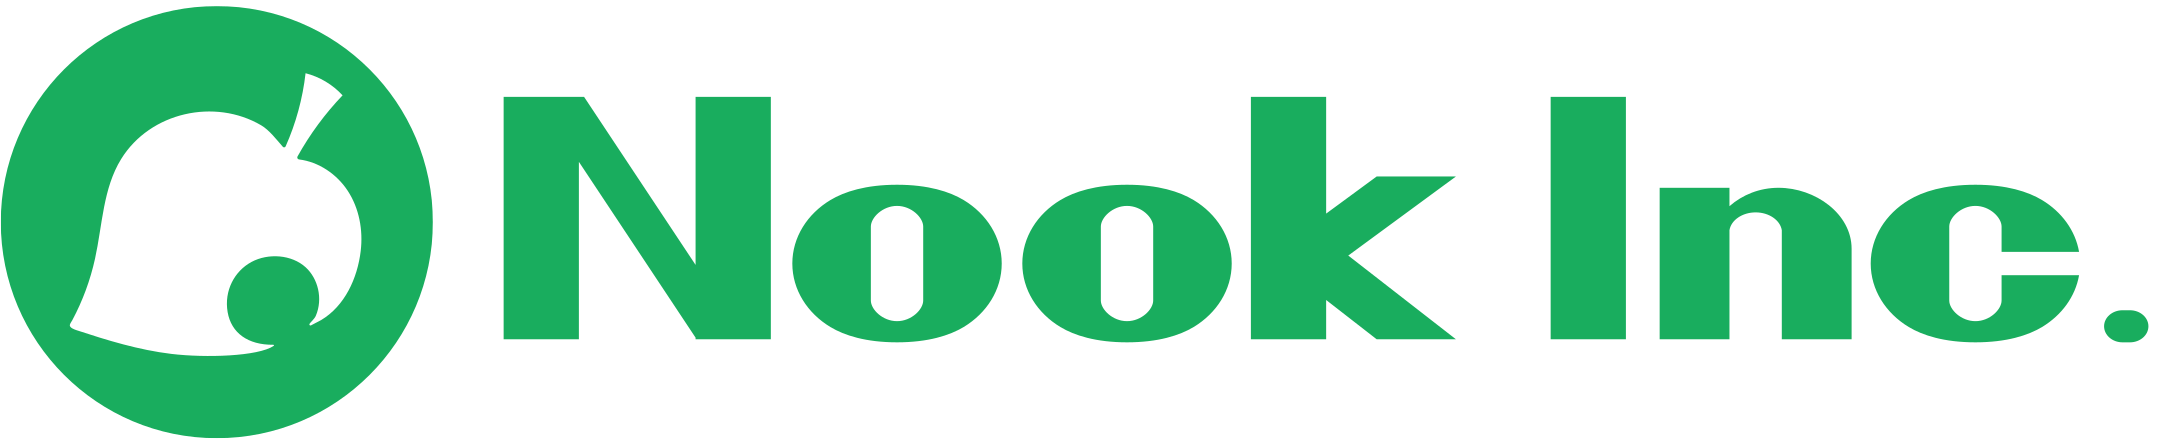 Логотип Inc. Nook Inc. Nook логотип. Логотип Нук Инк.